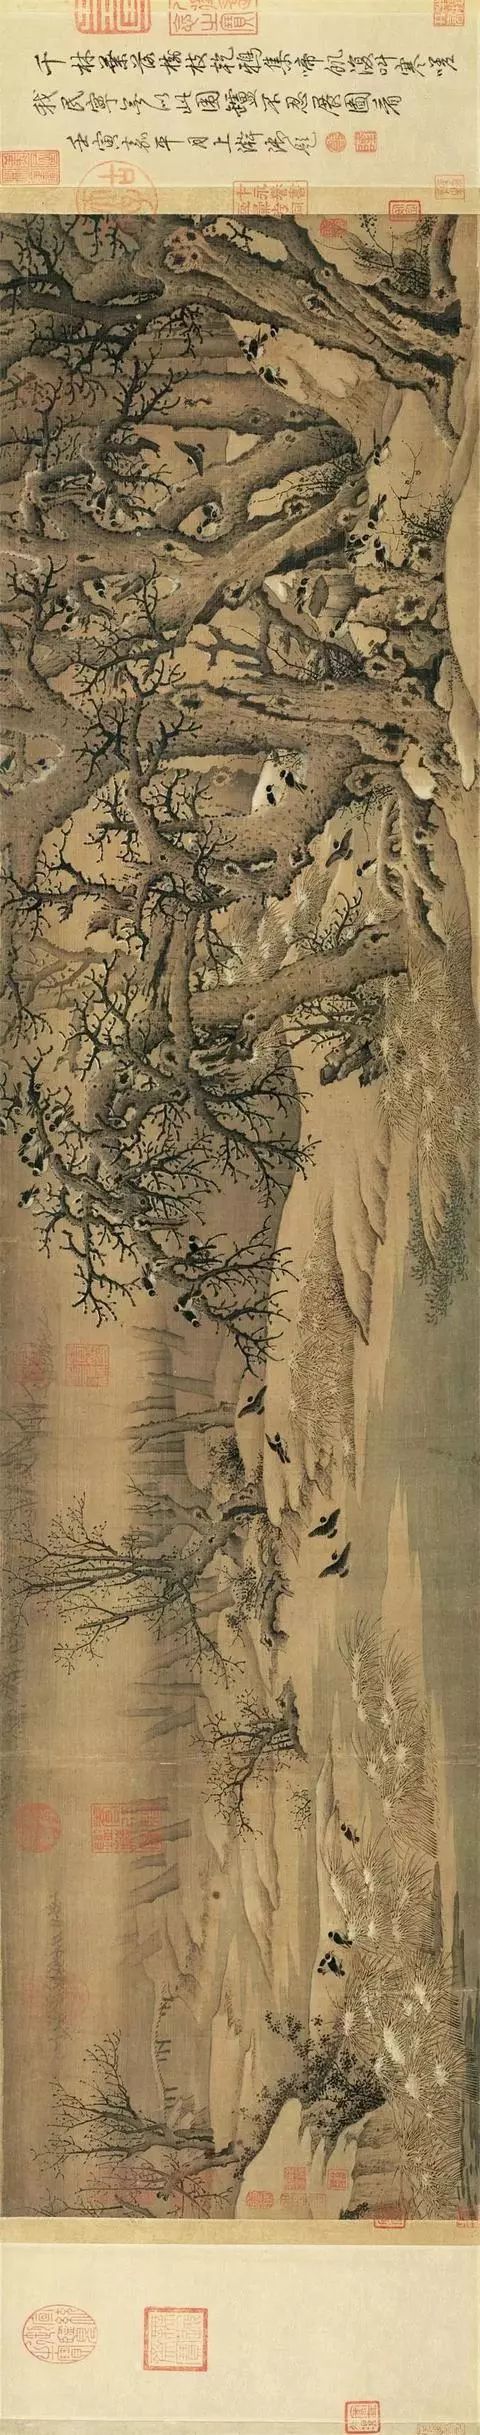 与范宽,关仝并称"三家鼎峙",他的山水画被誉为"古今第